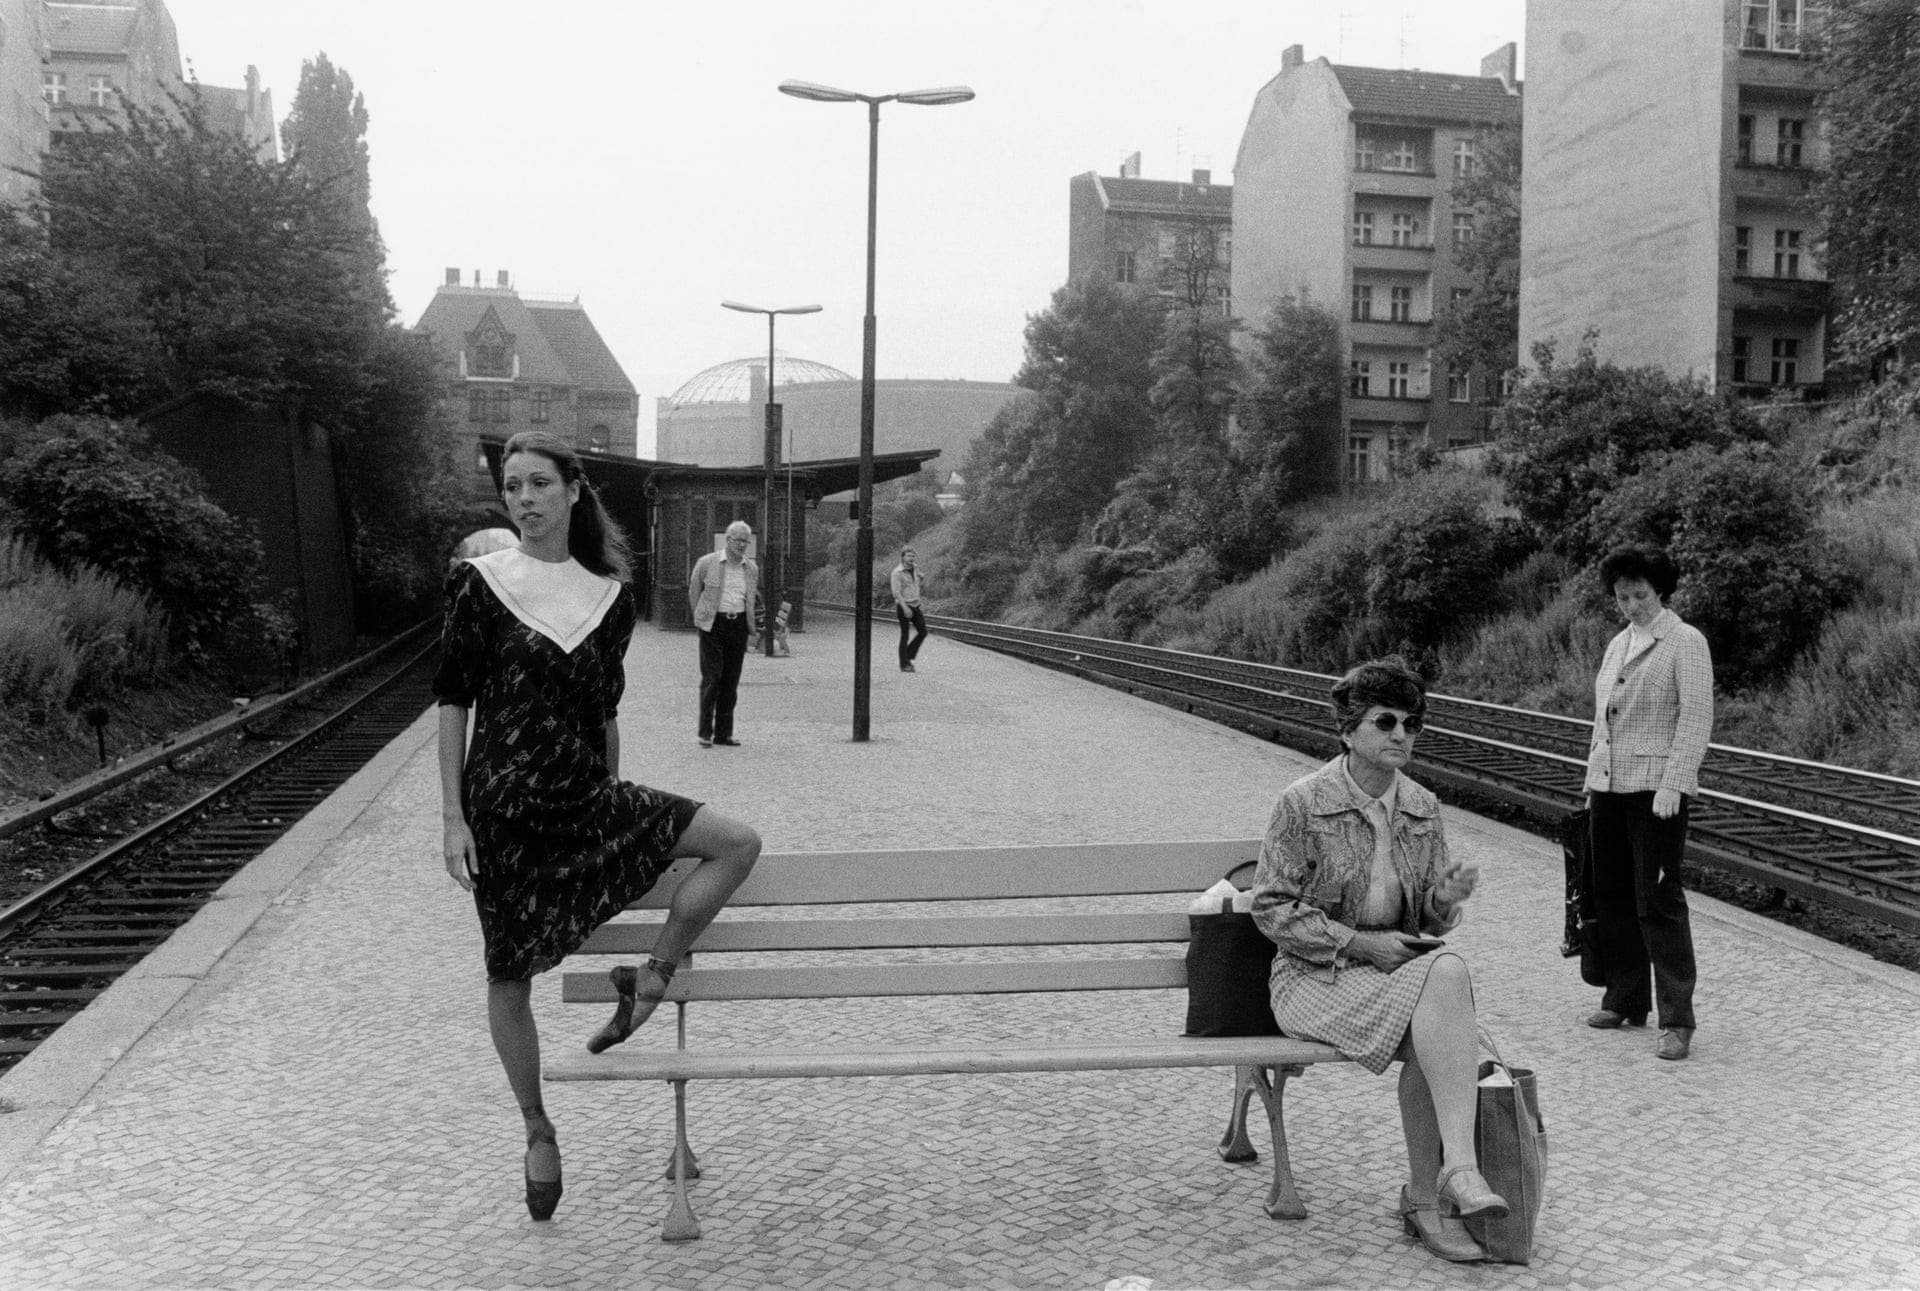 Балерина Ютта Анжелика. Пренцлауэр-Берг, Берлин, 1981. Фотограф Уте Малер